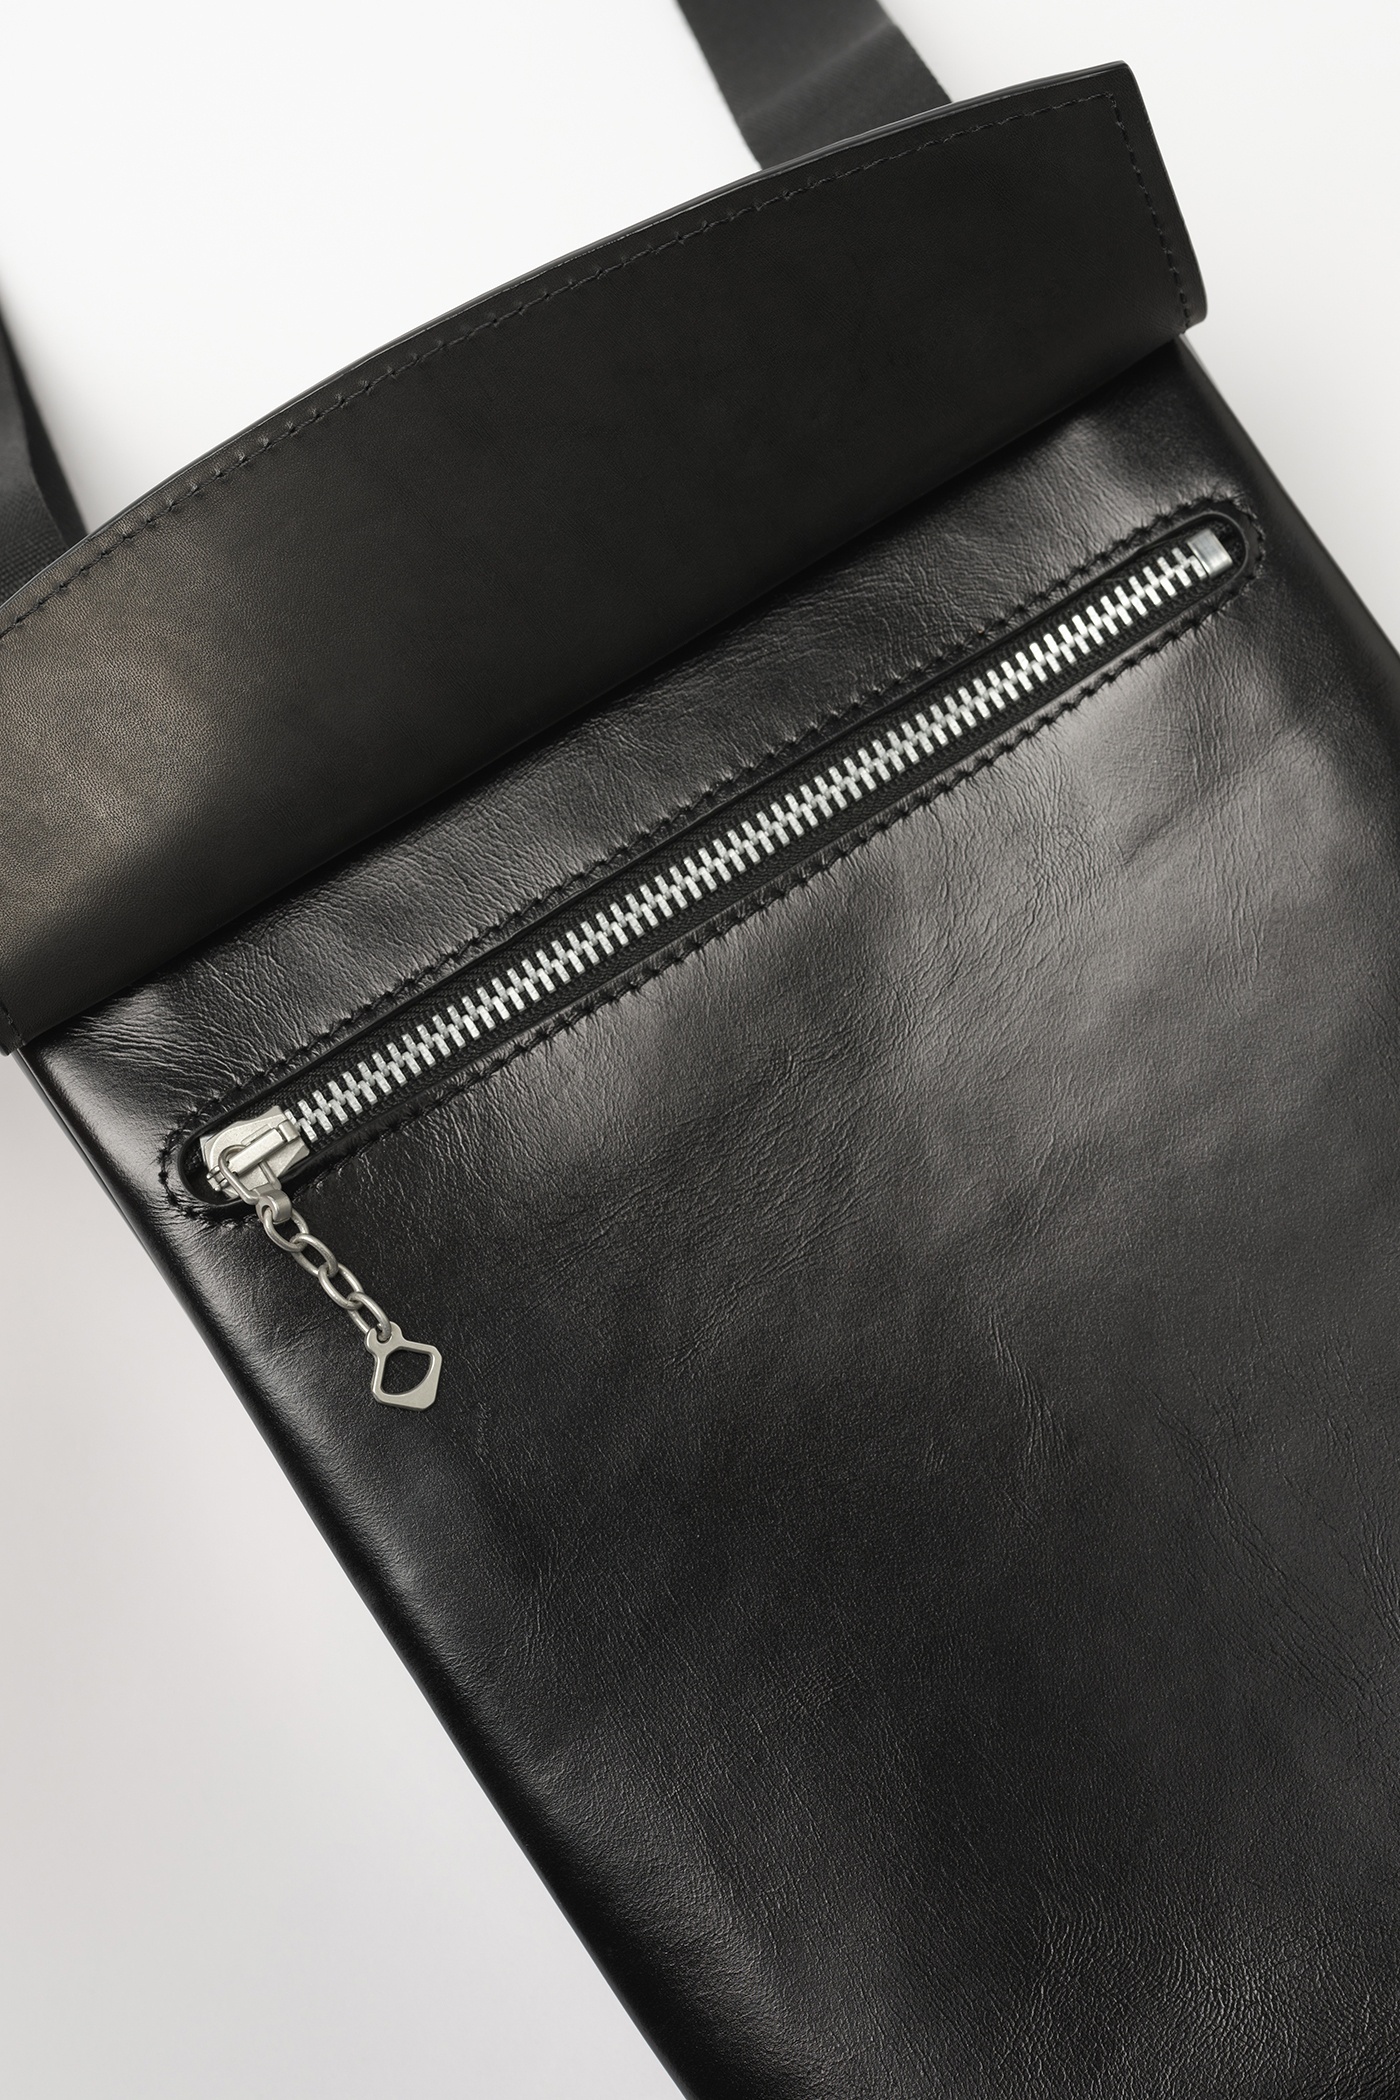 Pocket Bag Aamon Black Leather - 3